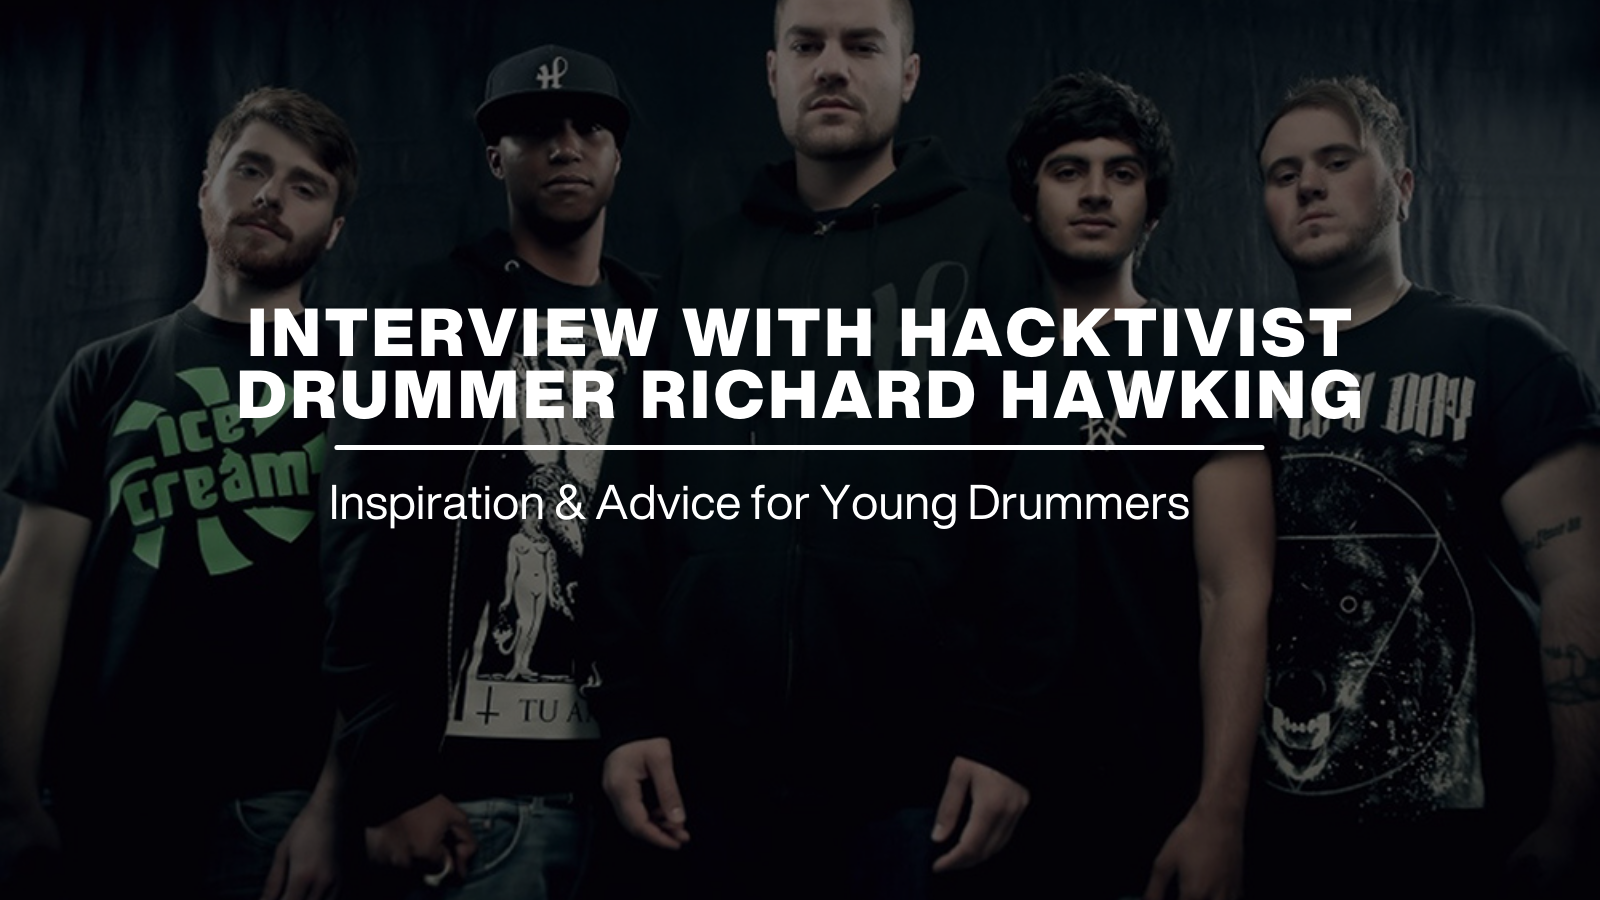 Interview with Hactivist Drummer Richard Hawking